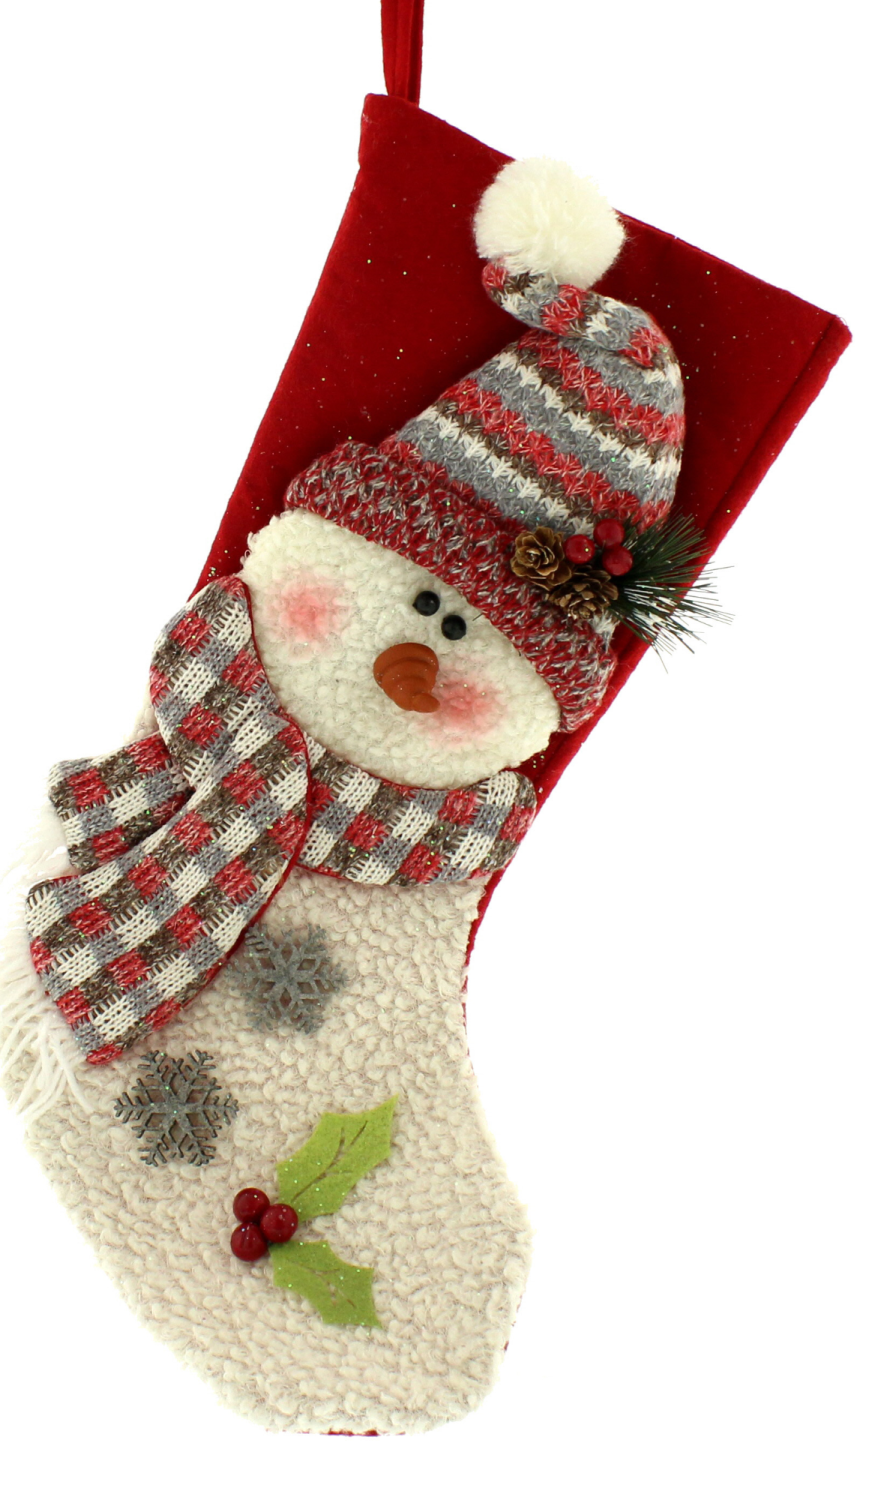 Snowman with a Pom Pom hat Stocking